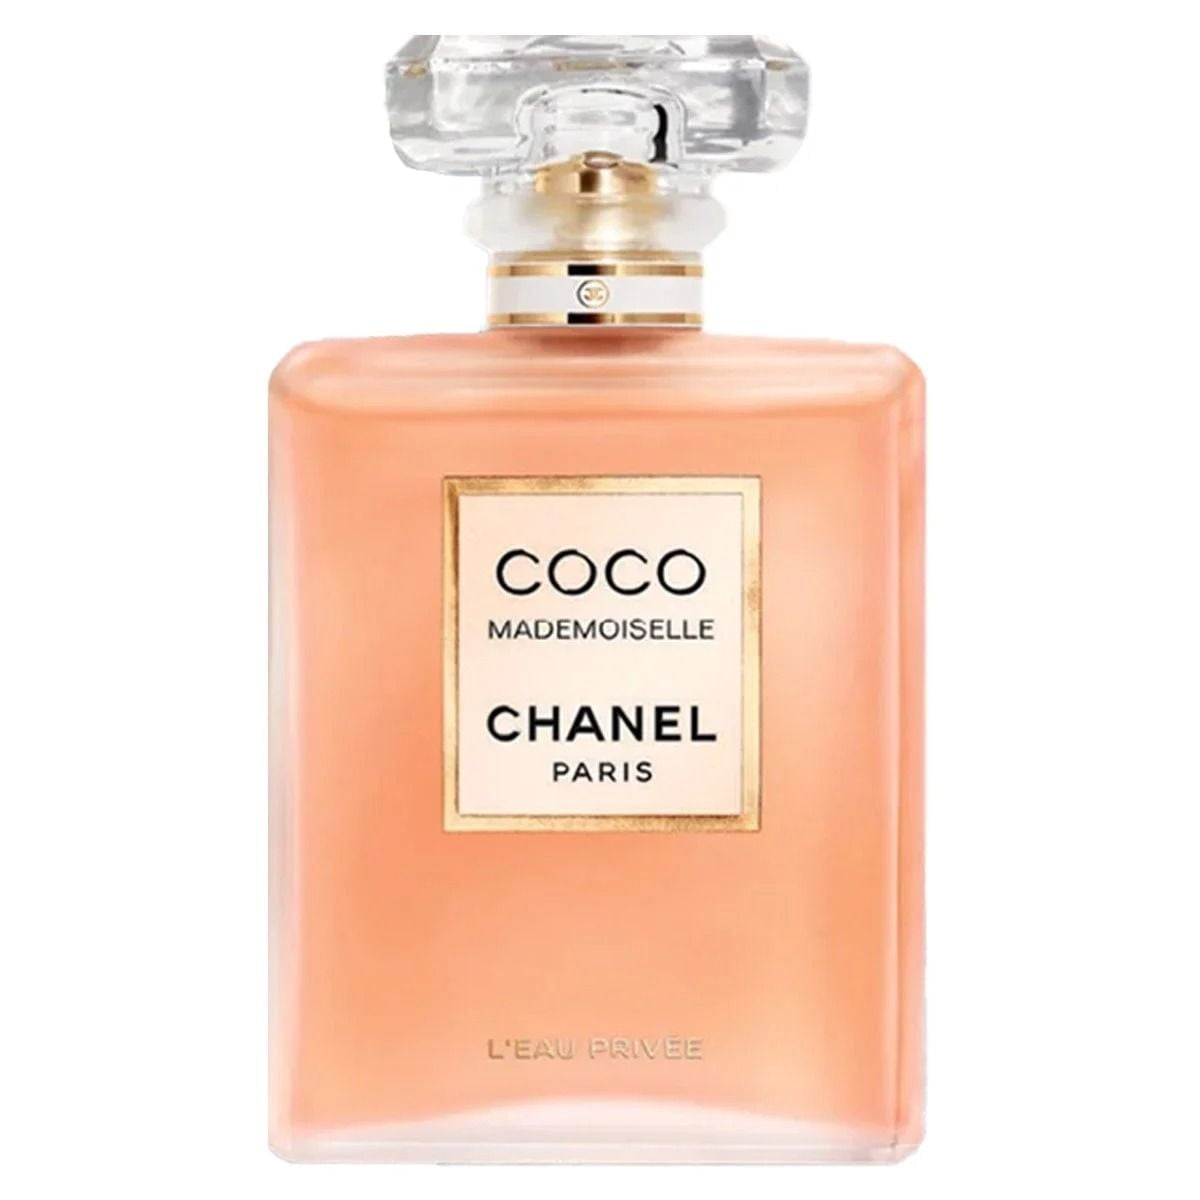 Nước Hoa Nữ Chanel Coco Mademoiselle L'eau Privee Eau Pour la Nuit